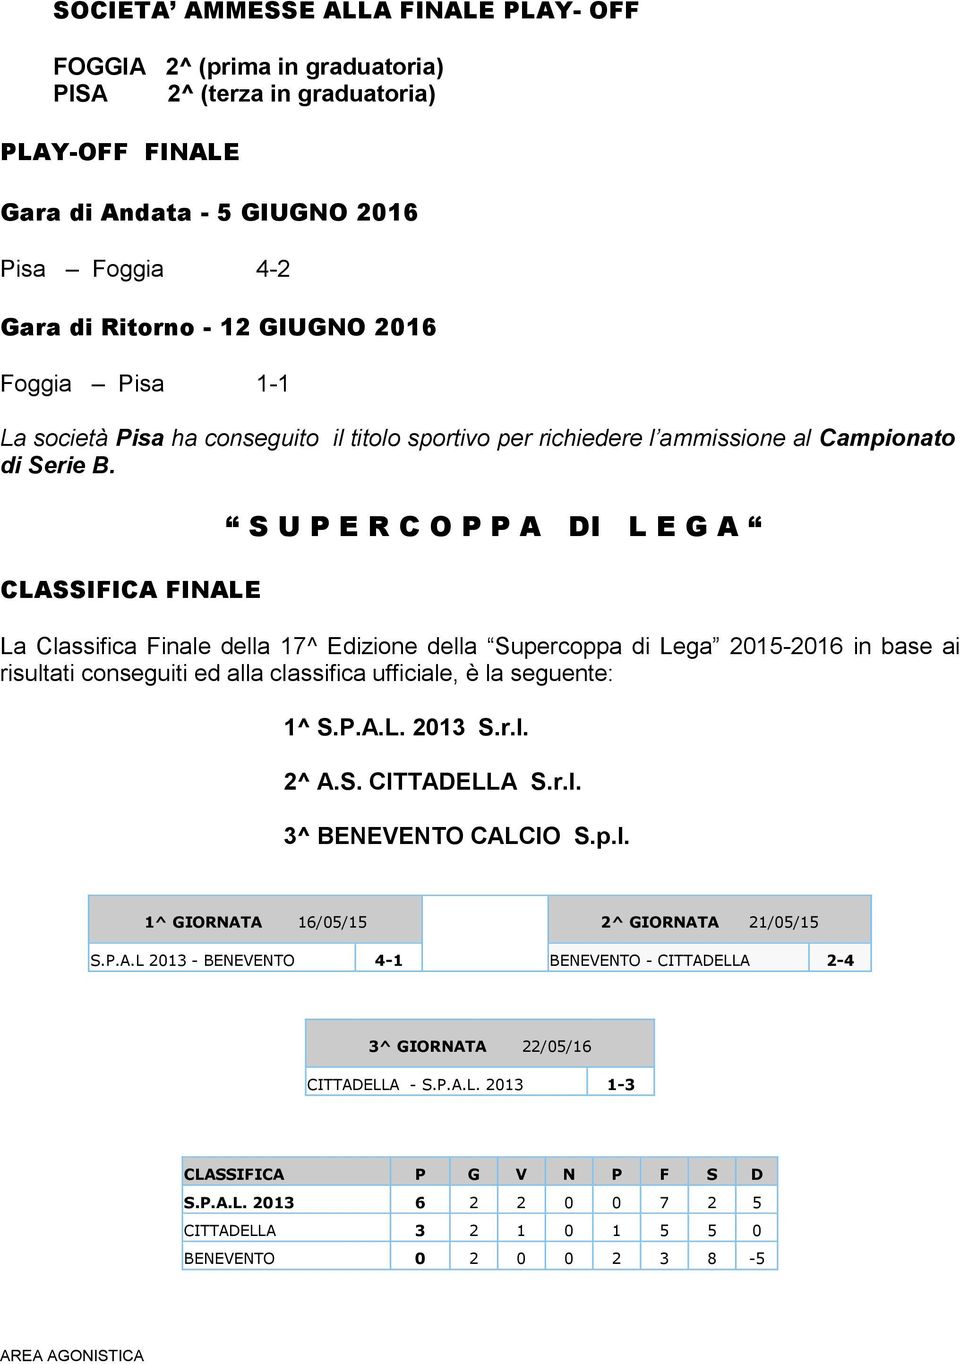 CLASSIFICA FINALE S U P E R C O P P A DI L E G A La Classifica Finale della 17^ Edizione della Supercoppa di Lega 2015-2016 in base ai risultati conseguiti ed alla classifica ufficiale, è la